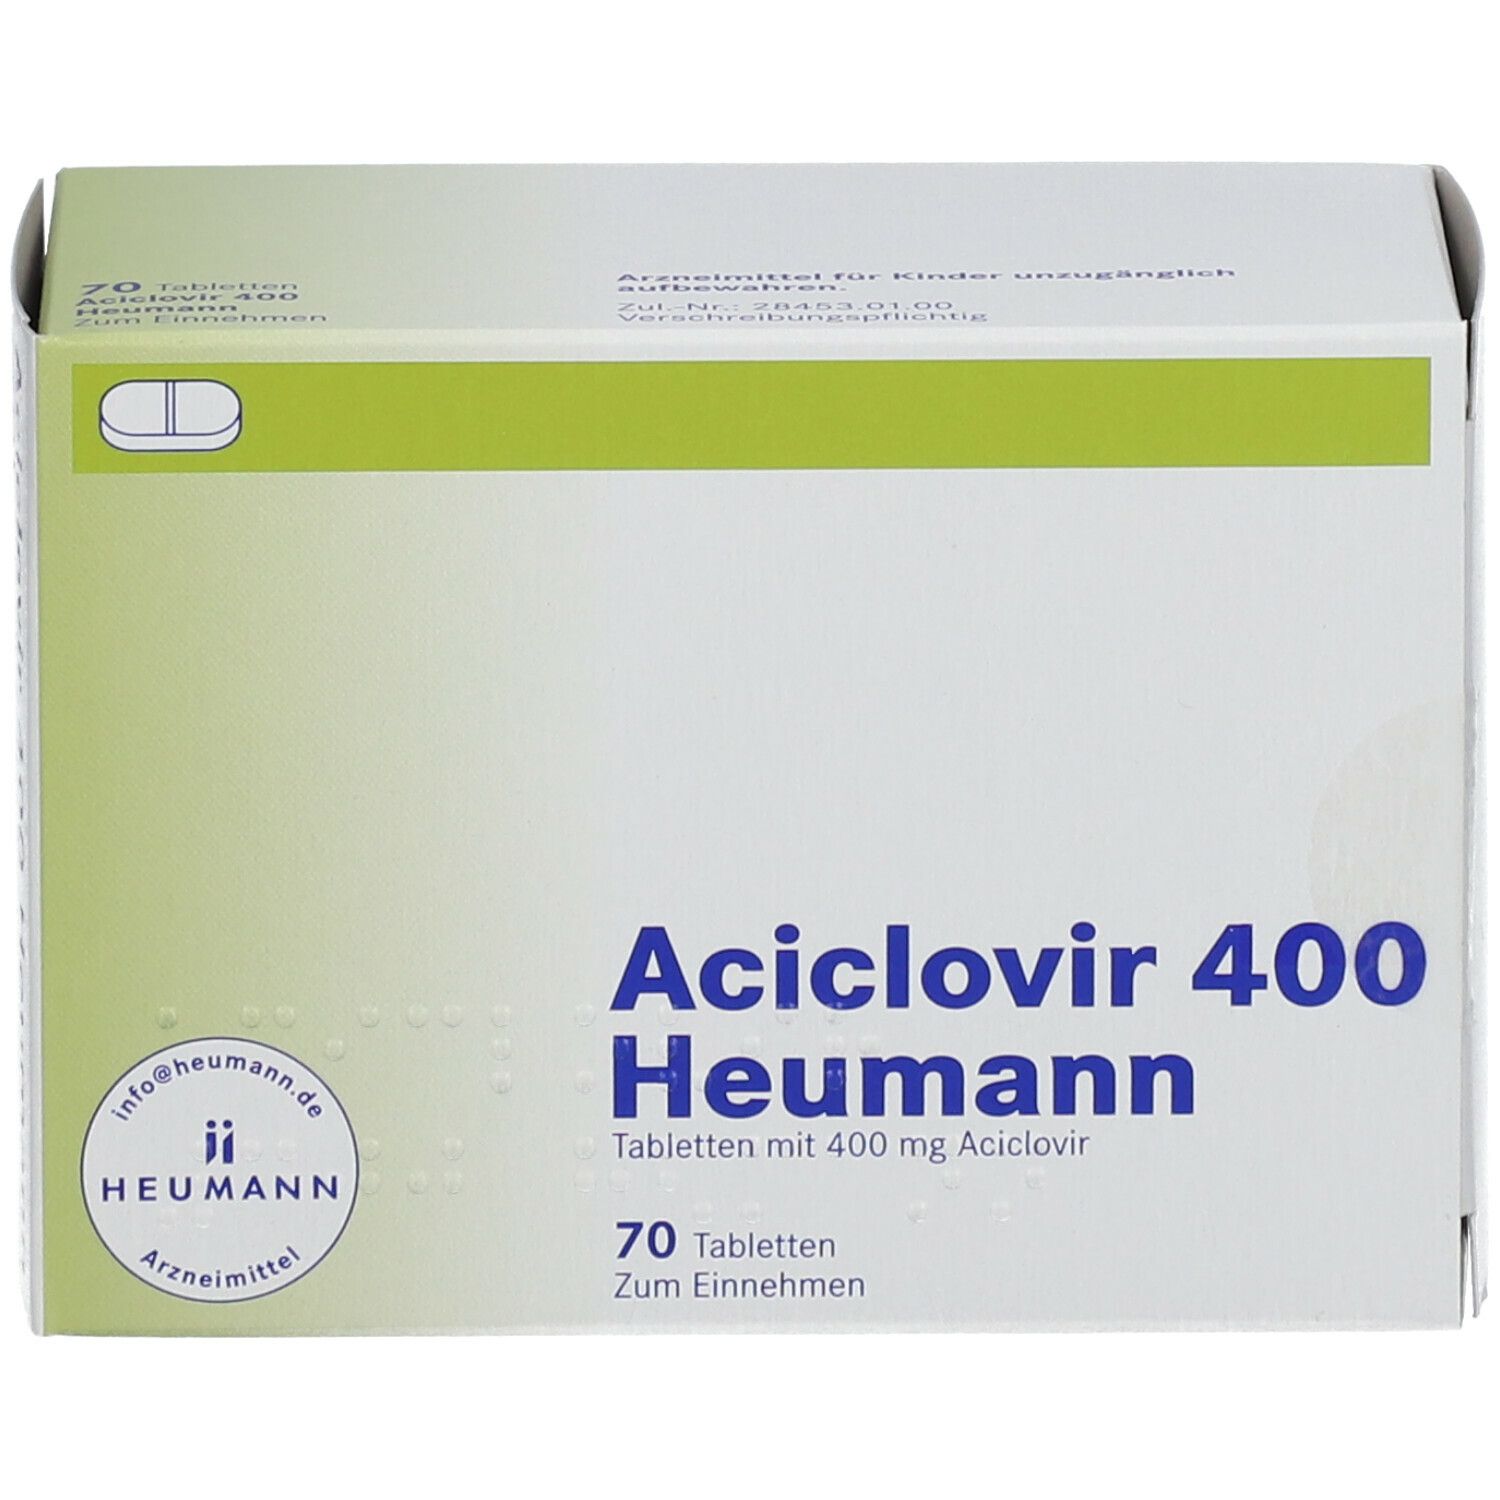 Aciclovir 400 Heumann